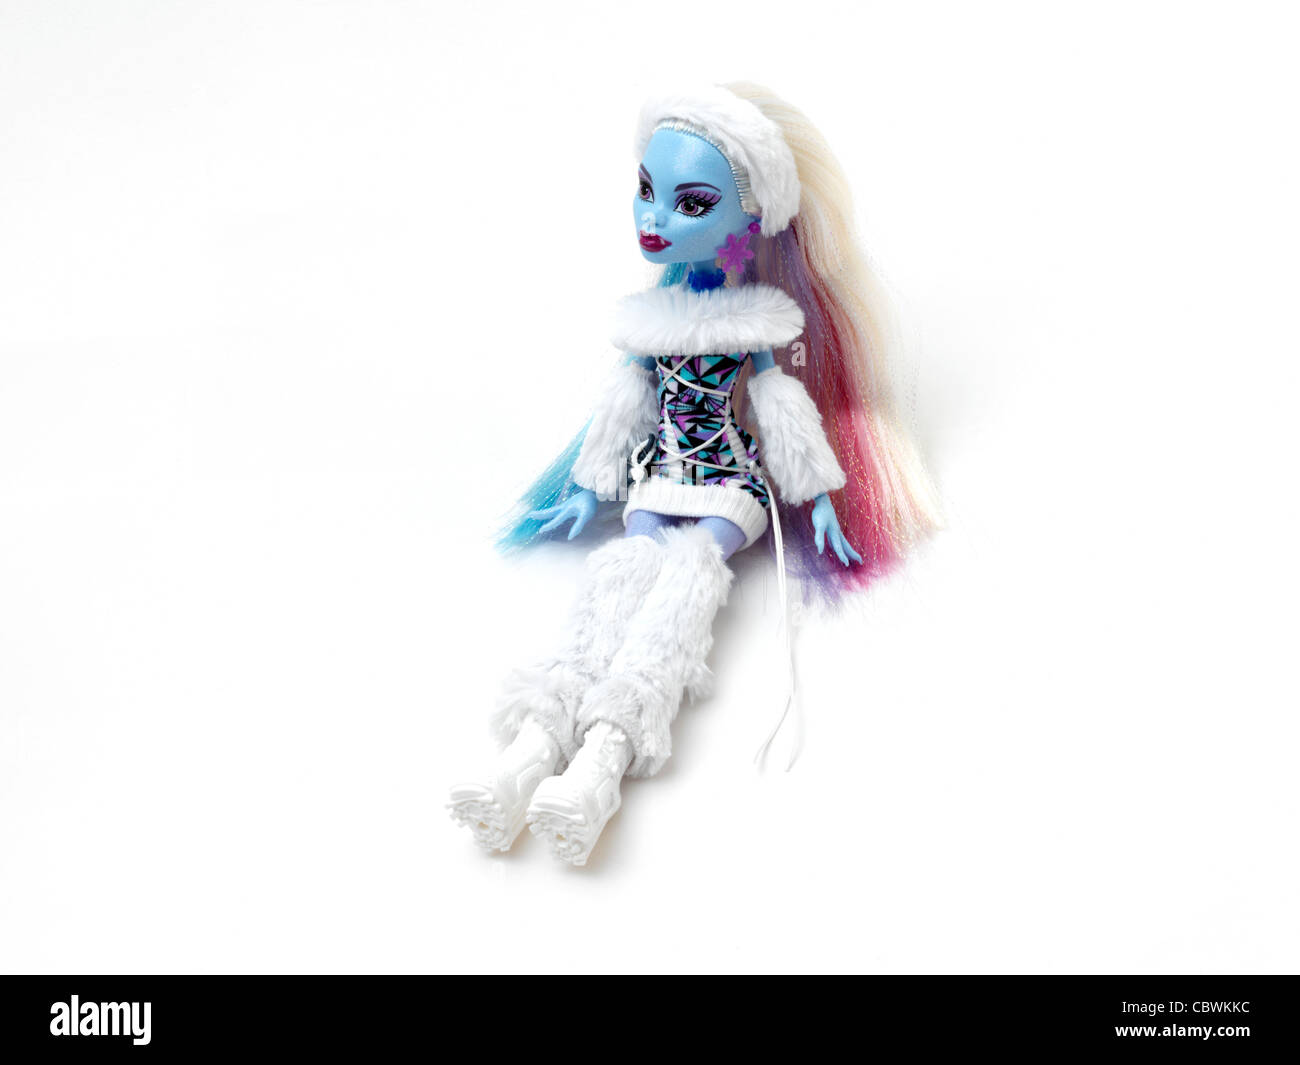 Monster High Puppe Abbey Bominable Tochter des Yeti mit blauer Haut und  Fell tragen Stockfotografie - Alamy